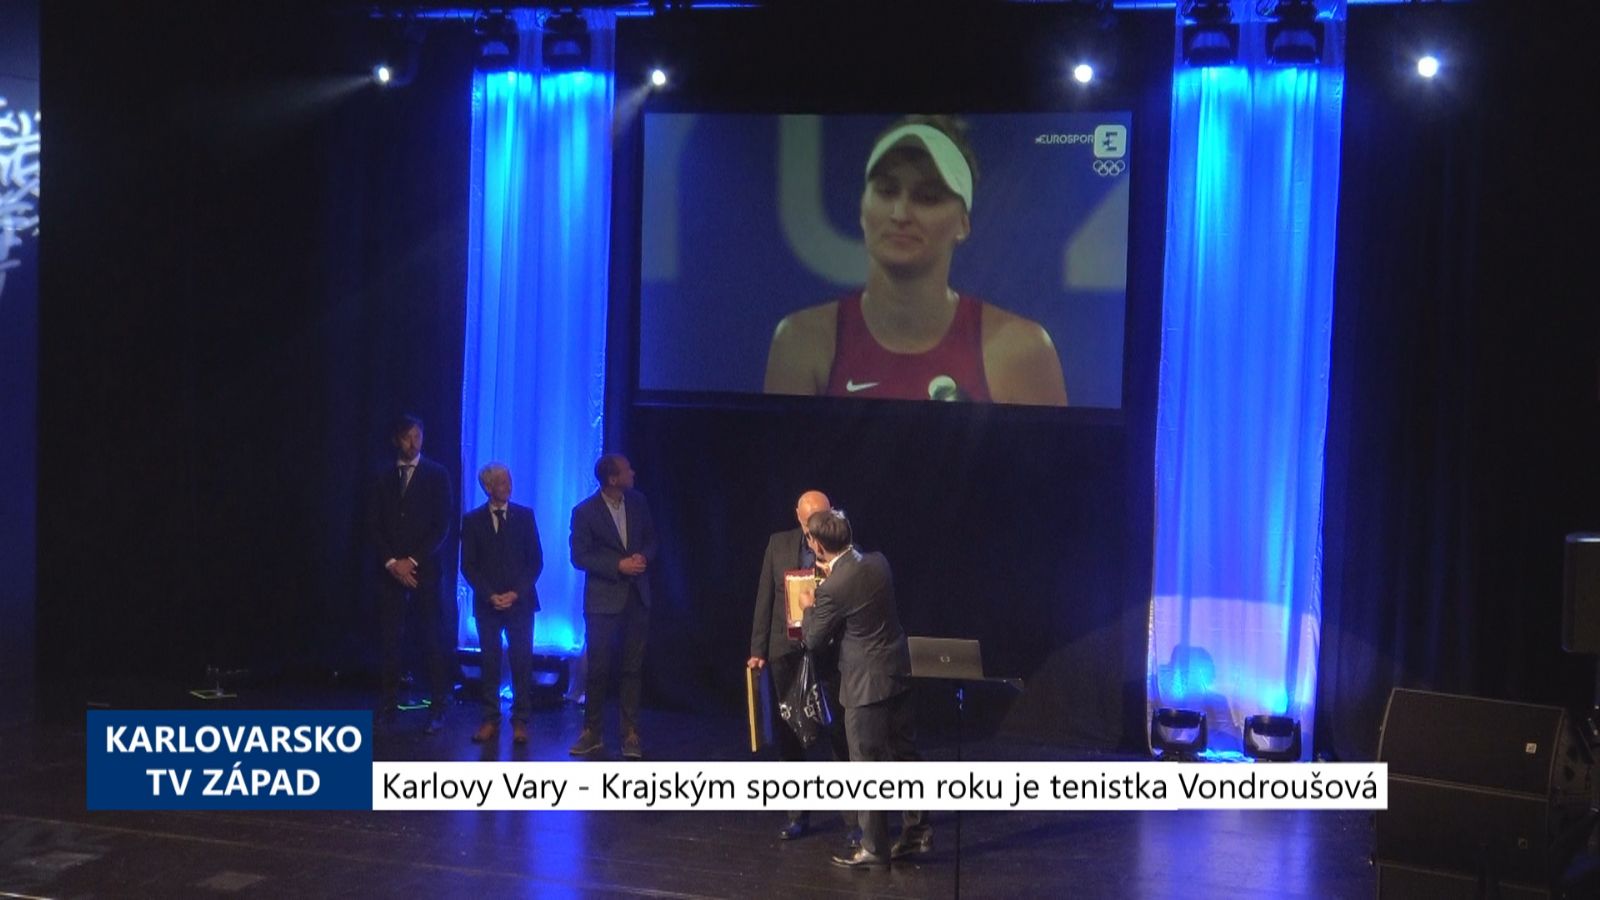 Karlovy Vary: Krajským sportovcem roku je tenistka Vondroušová (TV Západ)